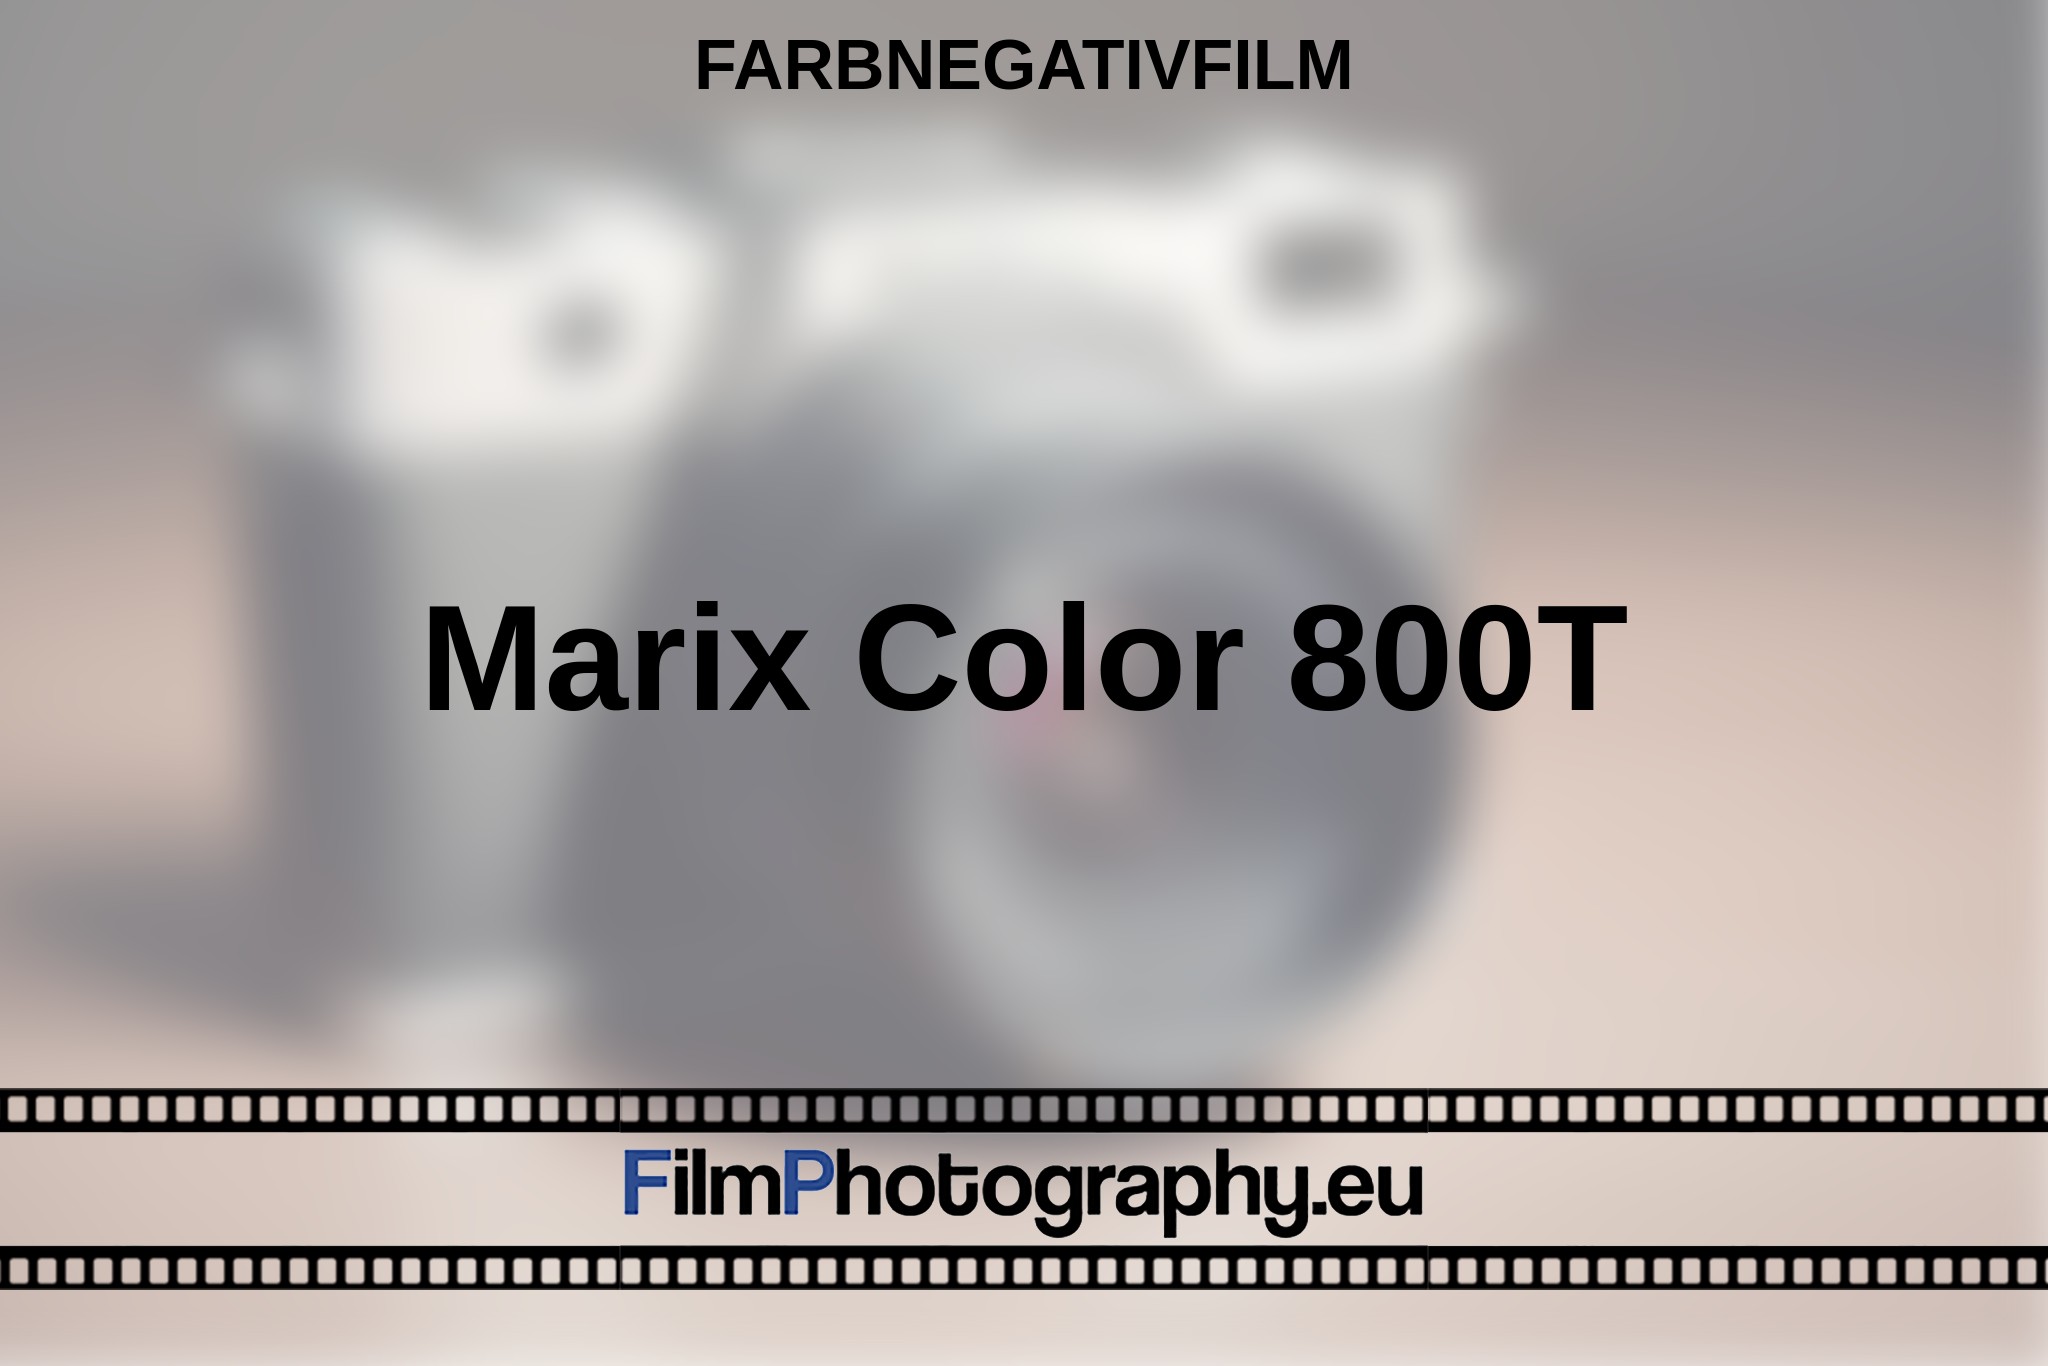 marix-color-800t-farbnegativfilm-bnv.jpg